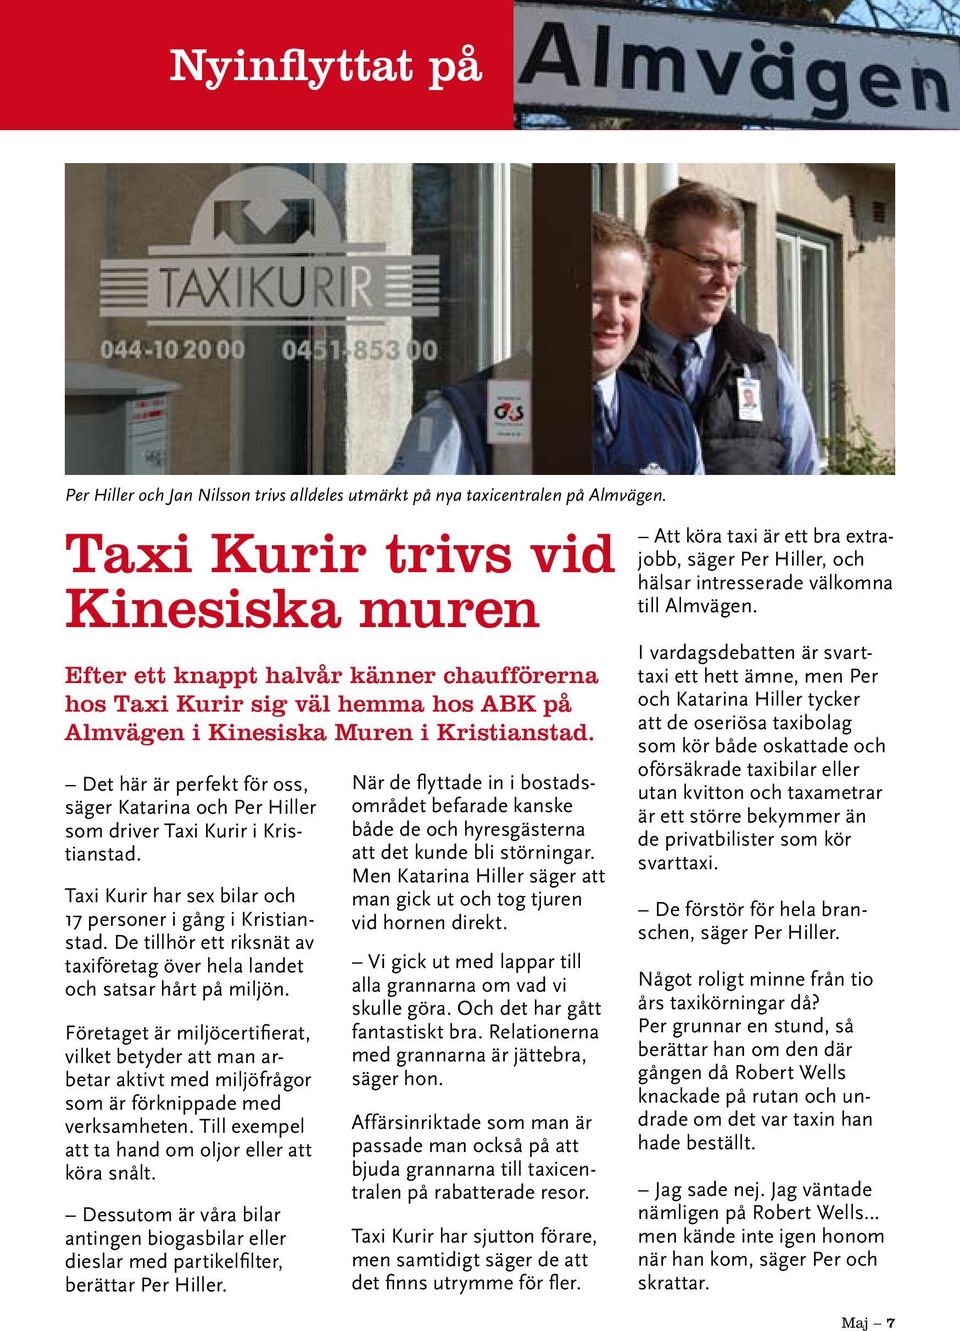 Det här är perfekt för oss, säger Katarina och Per Hiller som driver Taxi Kurir i Kristianstad. Taxi Kurir har sex bilar och 17 personer i gång i Kristianstad.